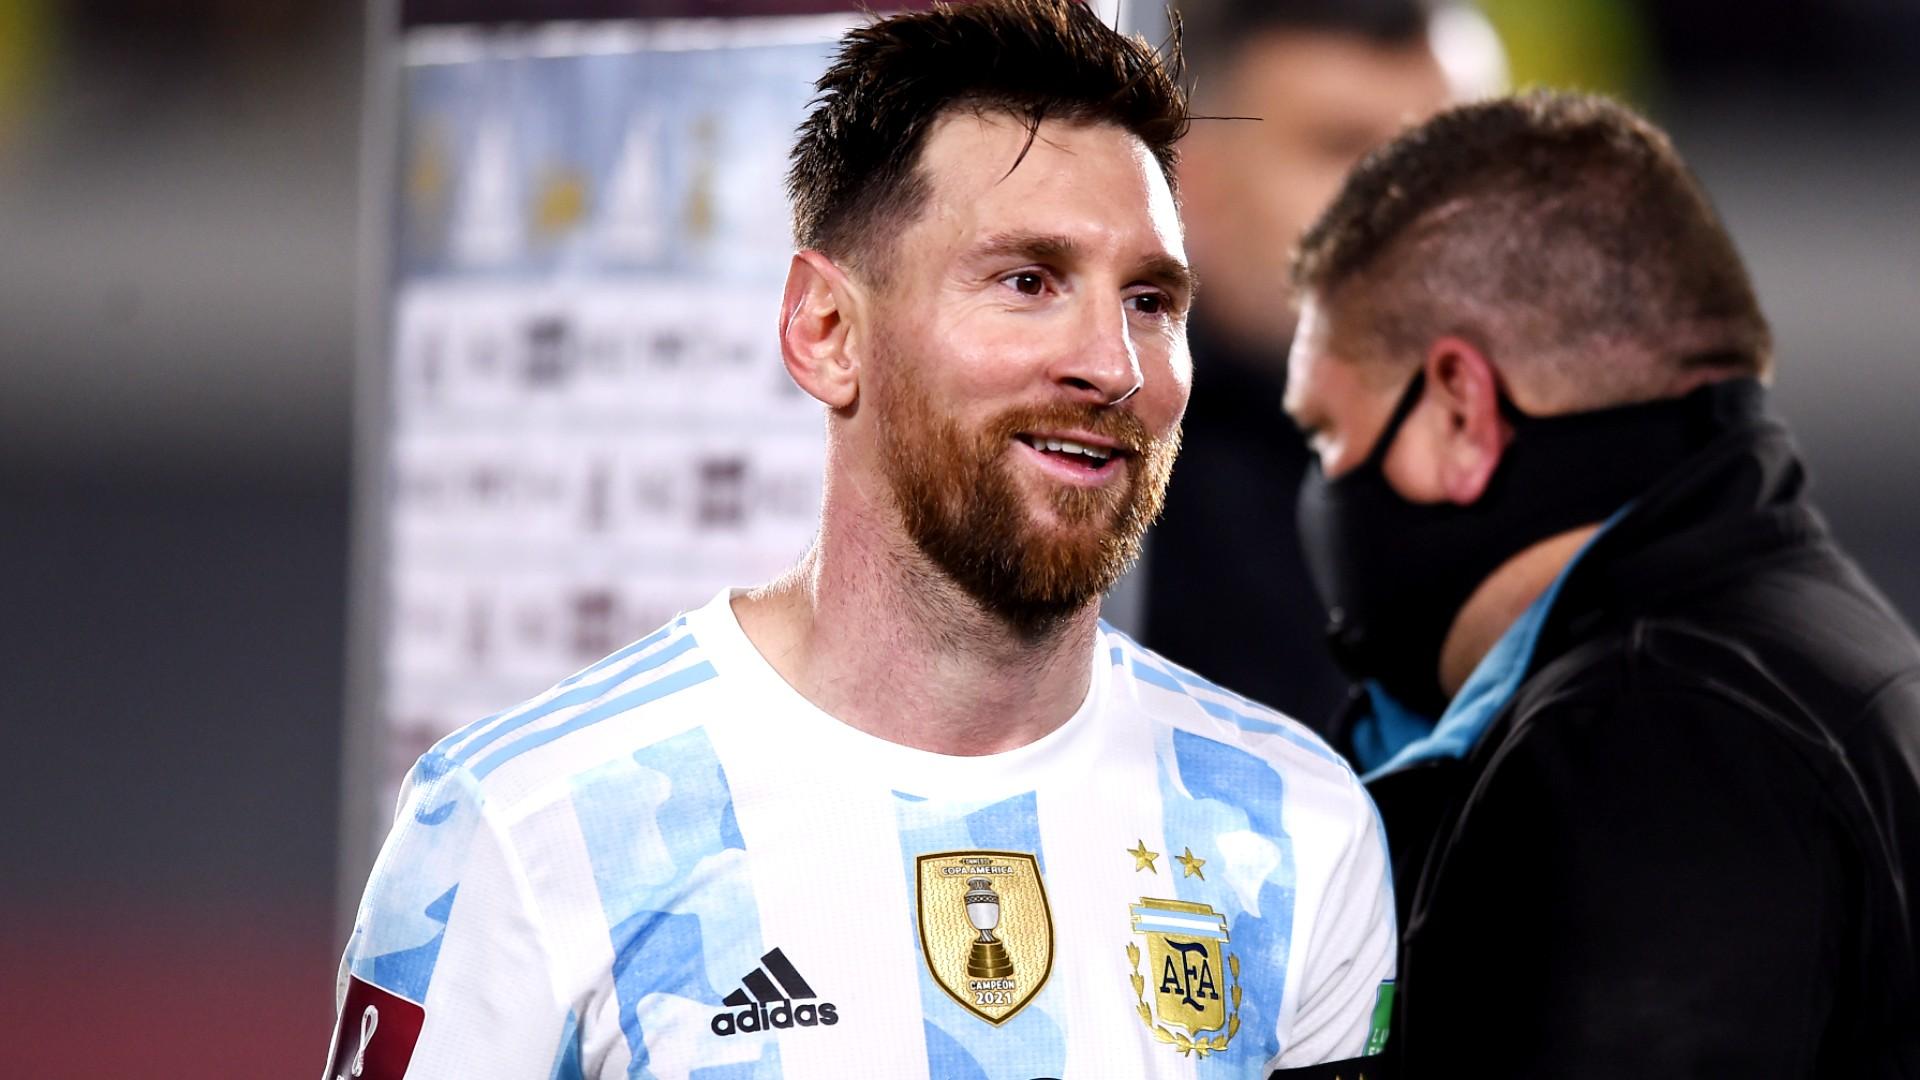 Các fan trung thành của Messi đừng lo lắng nữa! Sau một thời gian dài chơi cho đội tuyển Barca, chàng cầu thủ tài năng đã trở lại Argentina để đưa đội bóng quốc gia đến những chiến thắng mới. Điều này chắc chắn khiến cho bóng đá Argentina thêm phần hấp dẫn.